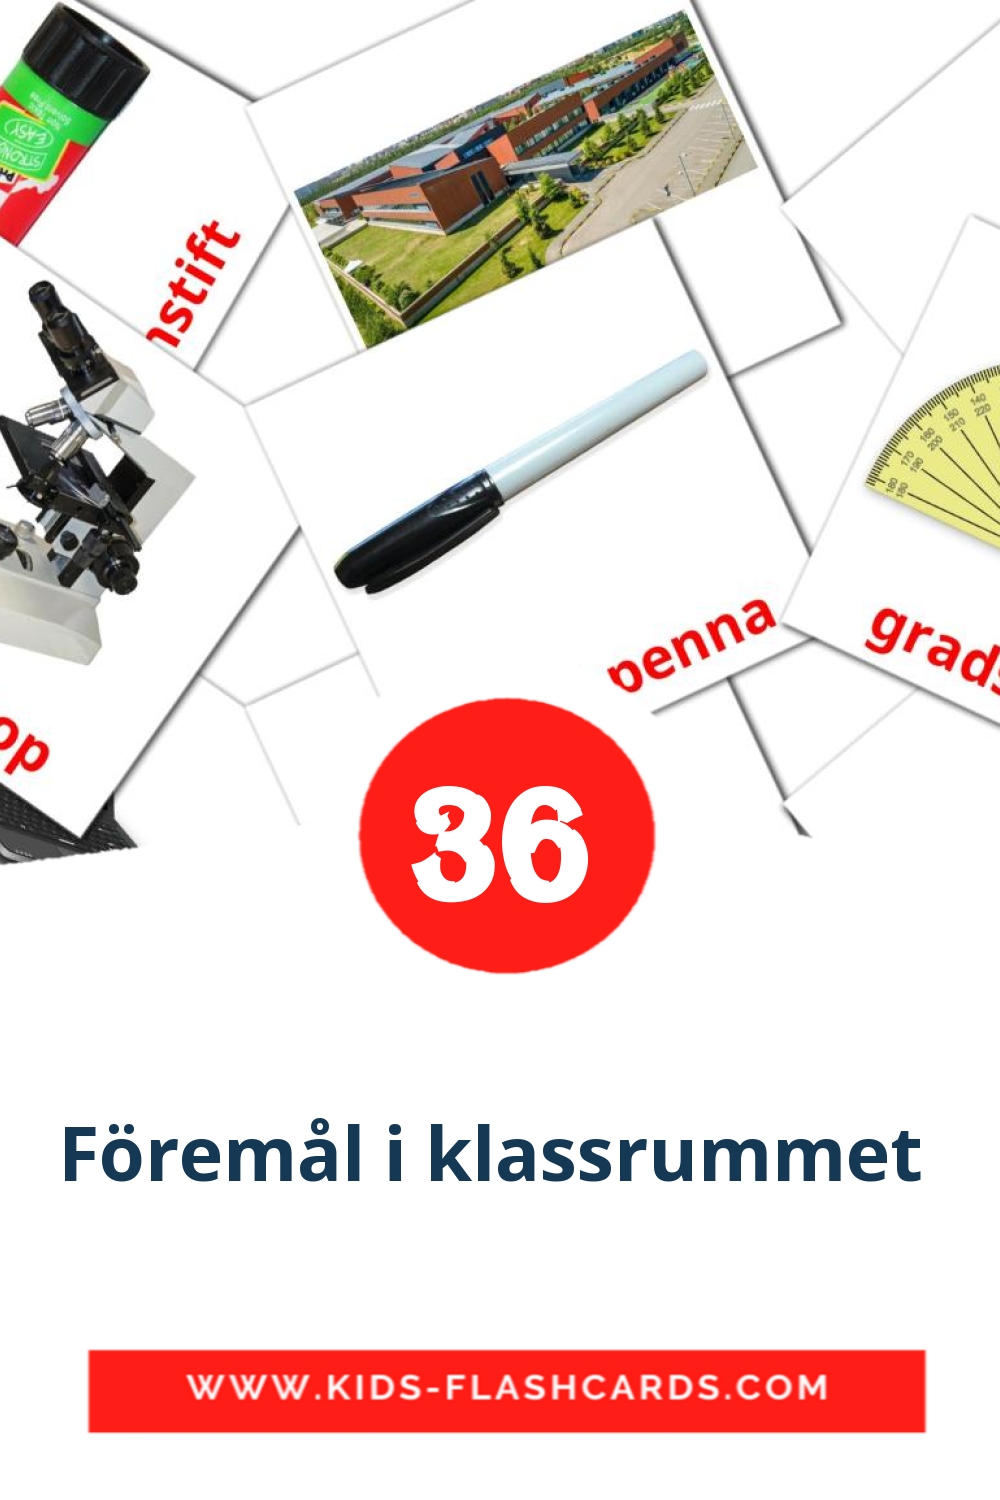 36 cartes illustrées de Föremål i klassrummet  pour la maternelle en suédois